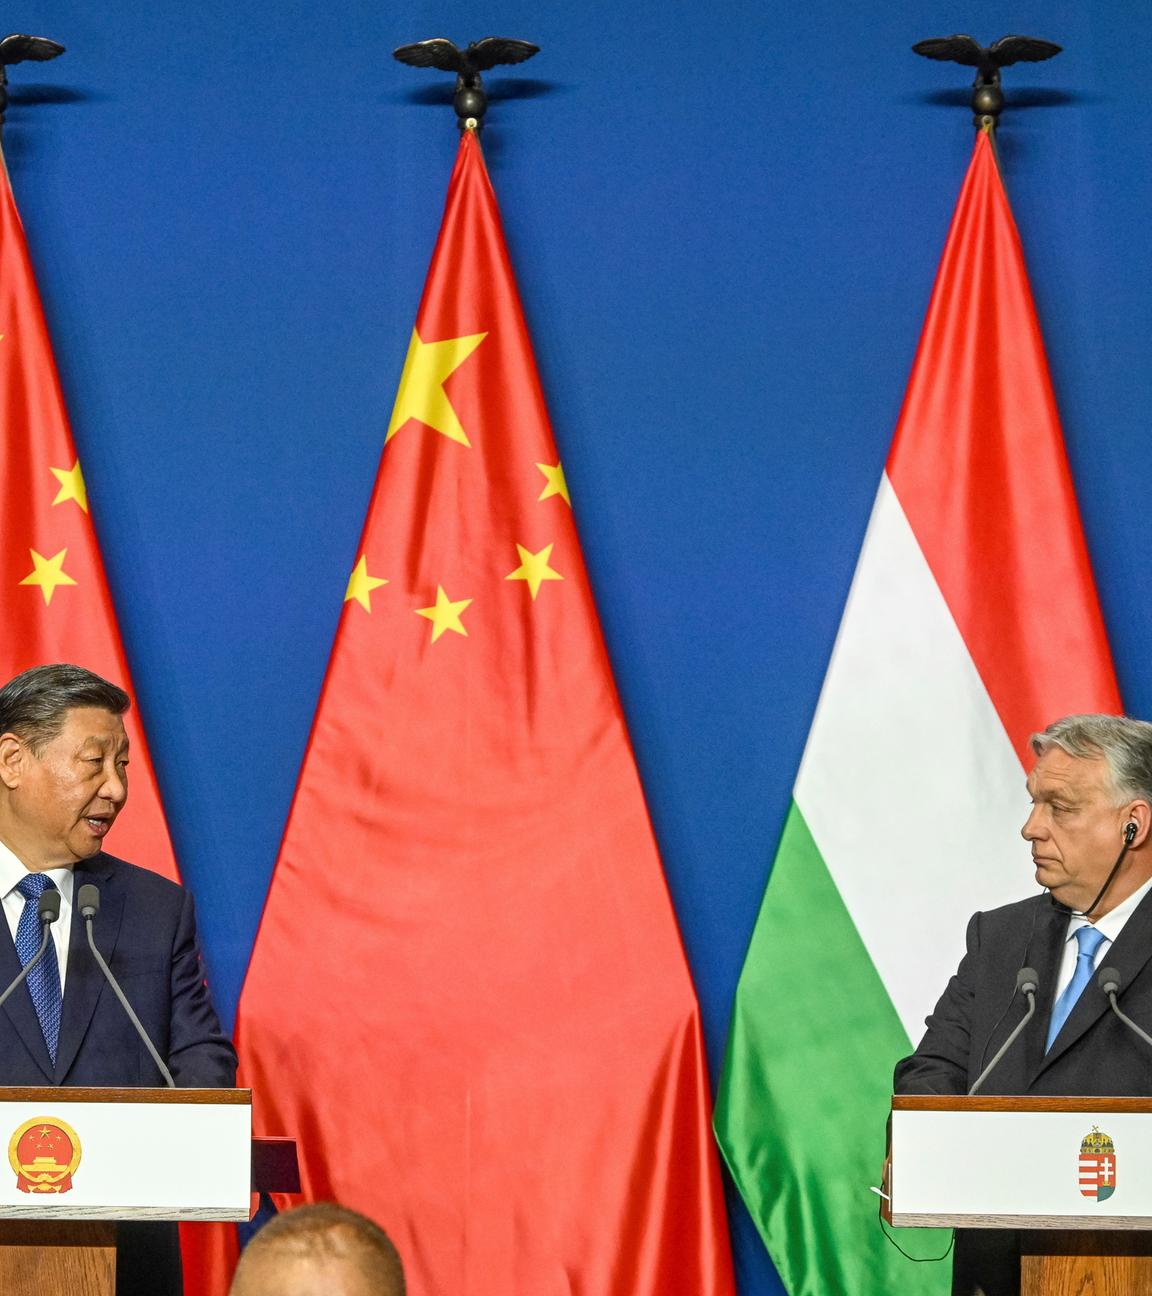 Chinas Staatspräsident XI Jinping und Ungarns Präsident Viktor Orban auf der Bühne einer Pressekonferenz.